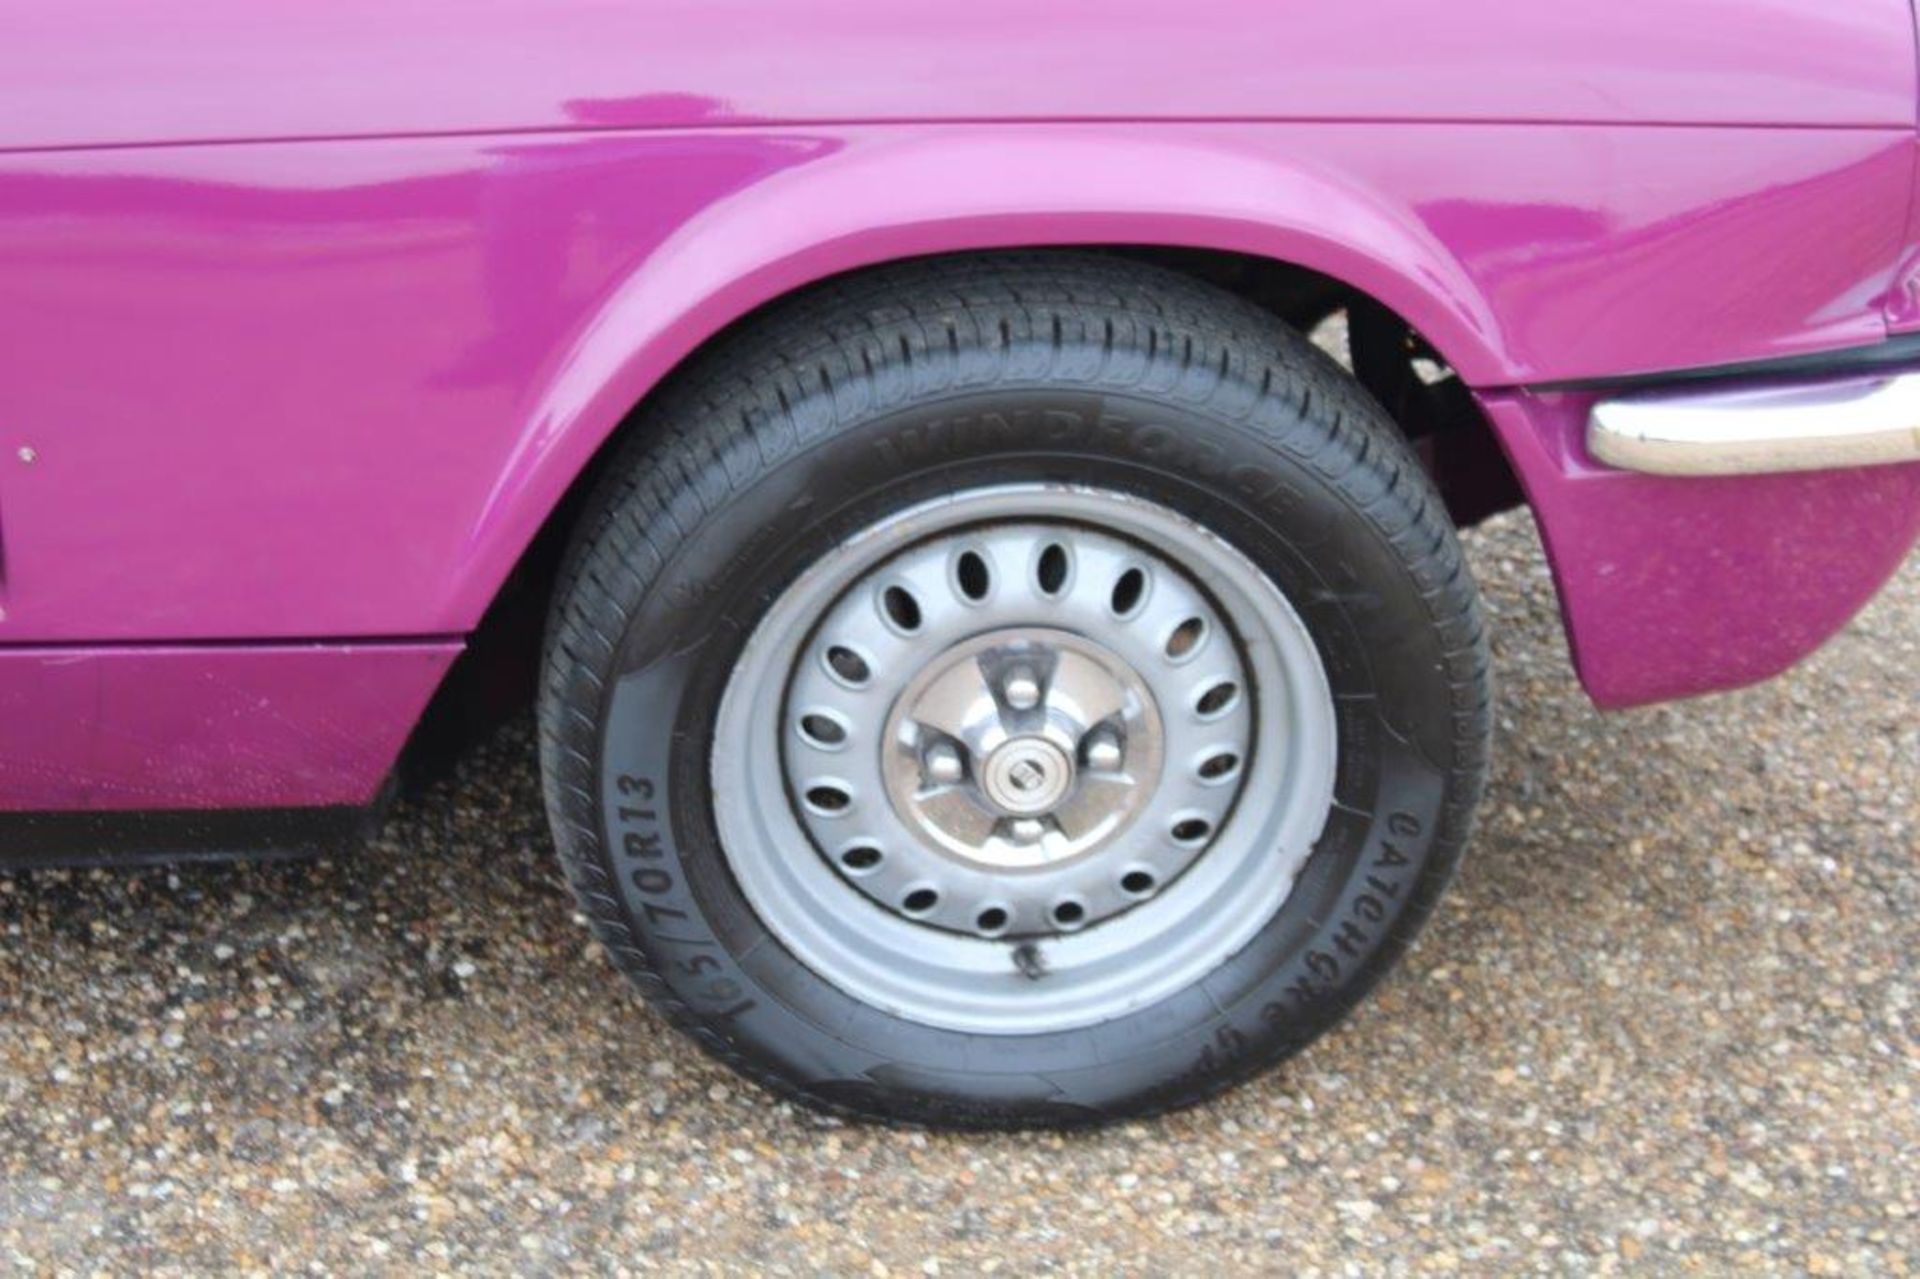 1973 Triumph GT6 - Image 14 of 16